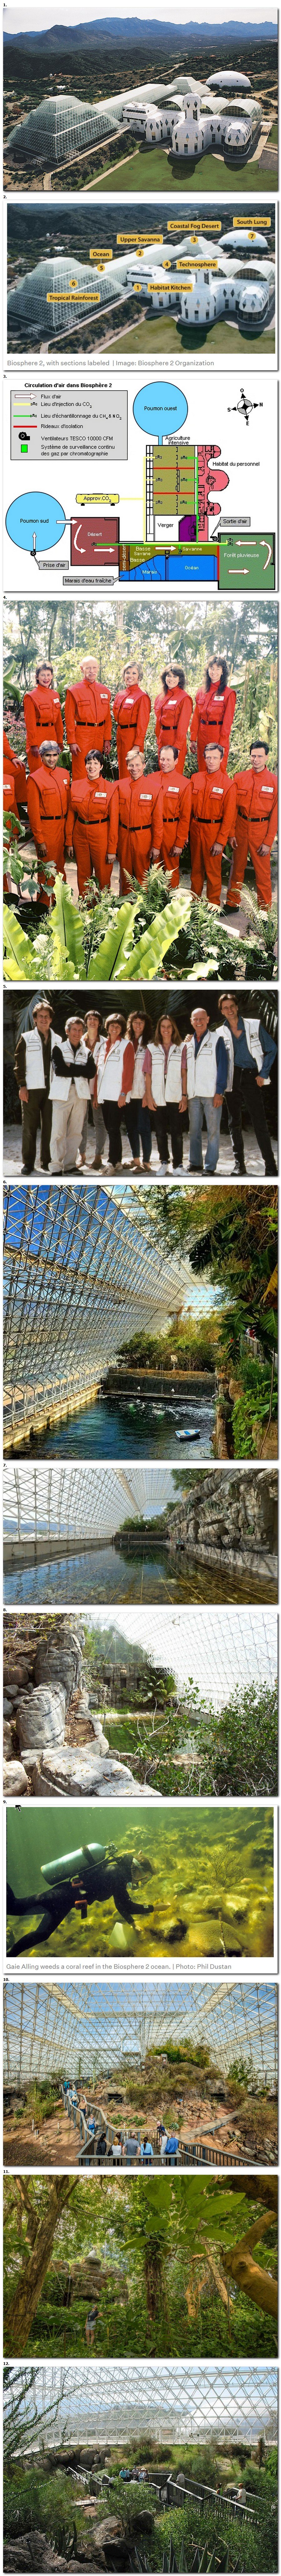 Biosphere 2